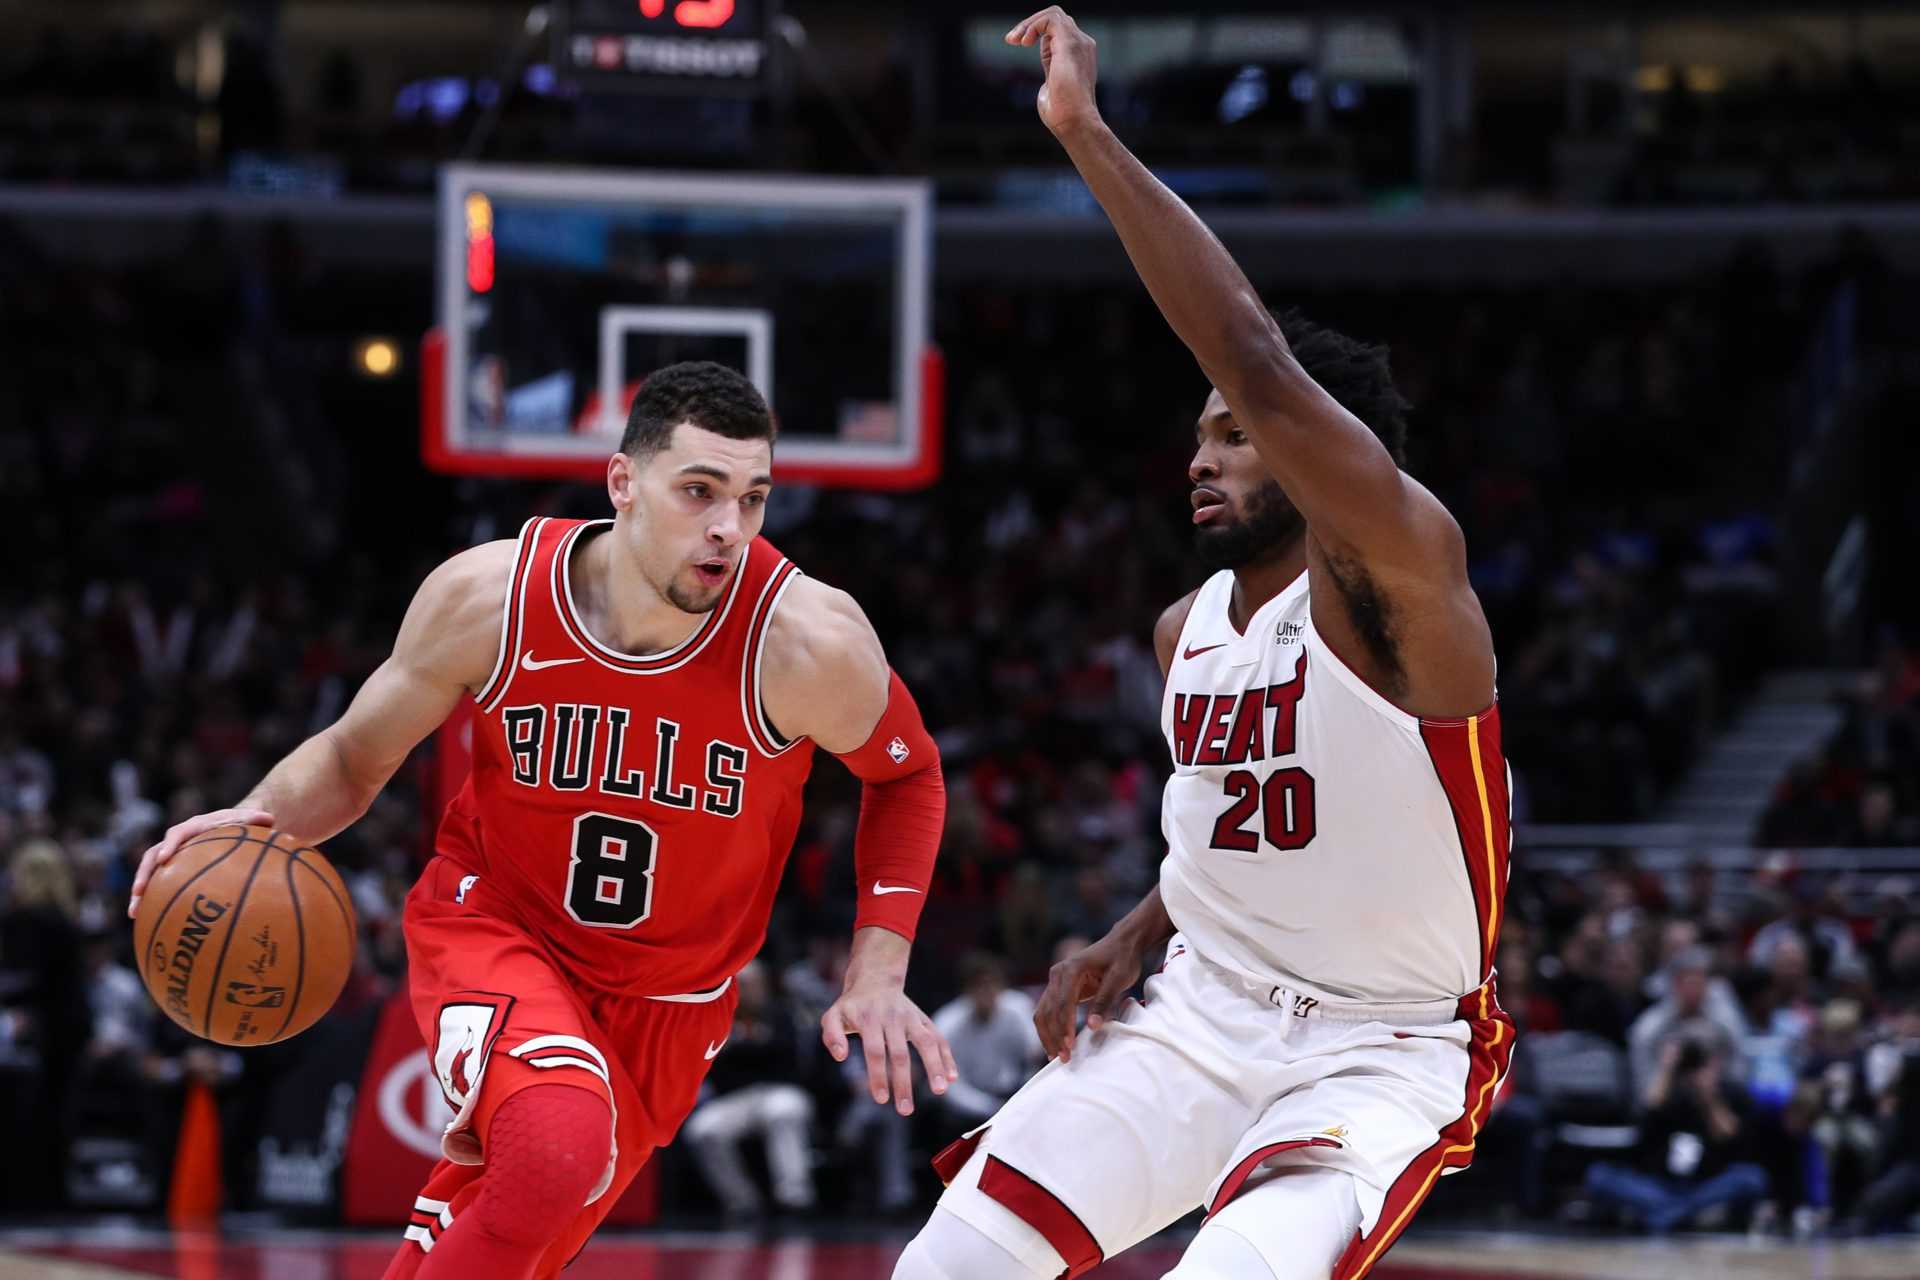 NBA Insider révèle pourquoi les Chicago Bulls pourraient tanker dans la saison 2020-21